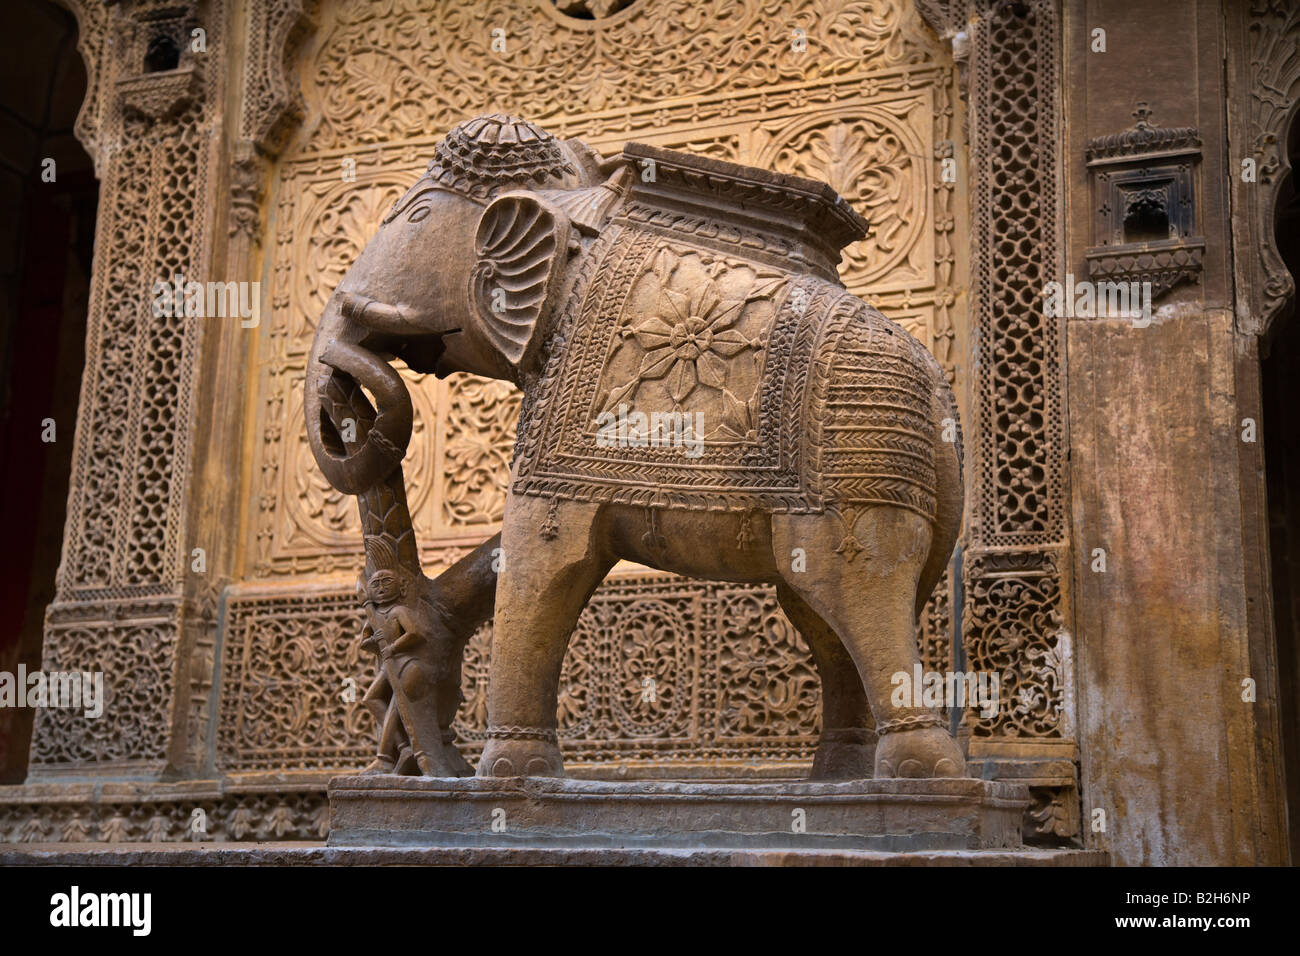 Eine handgeschnitzte Sandstein Elefant schmückt das äußere der Bürgermeister schöne HAVELI oder zu Hause in JAISALMER, RAJASTHAN Indien Stockfoto